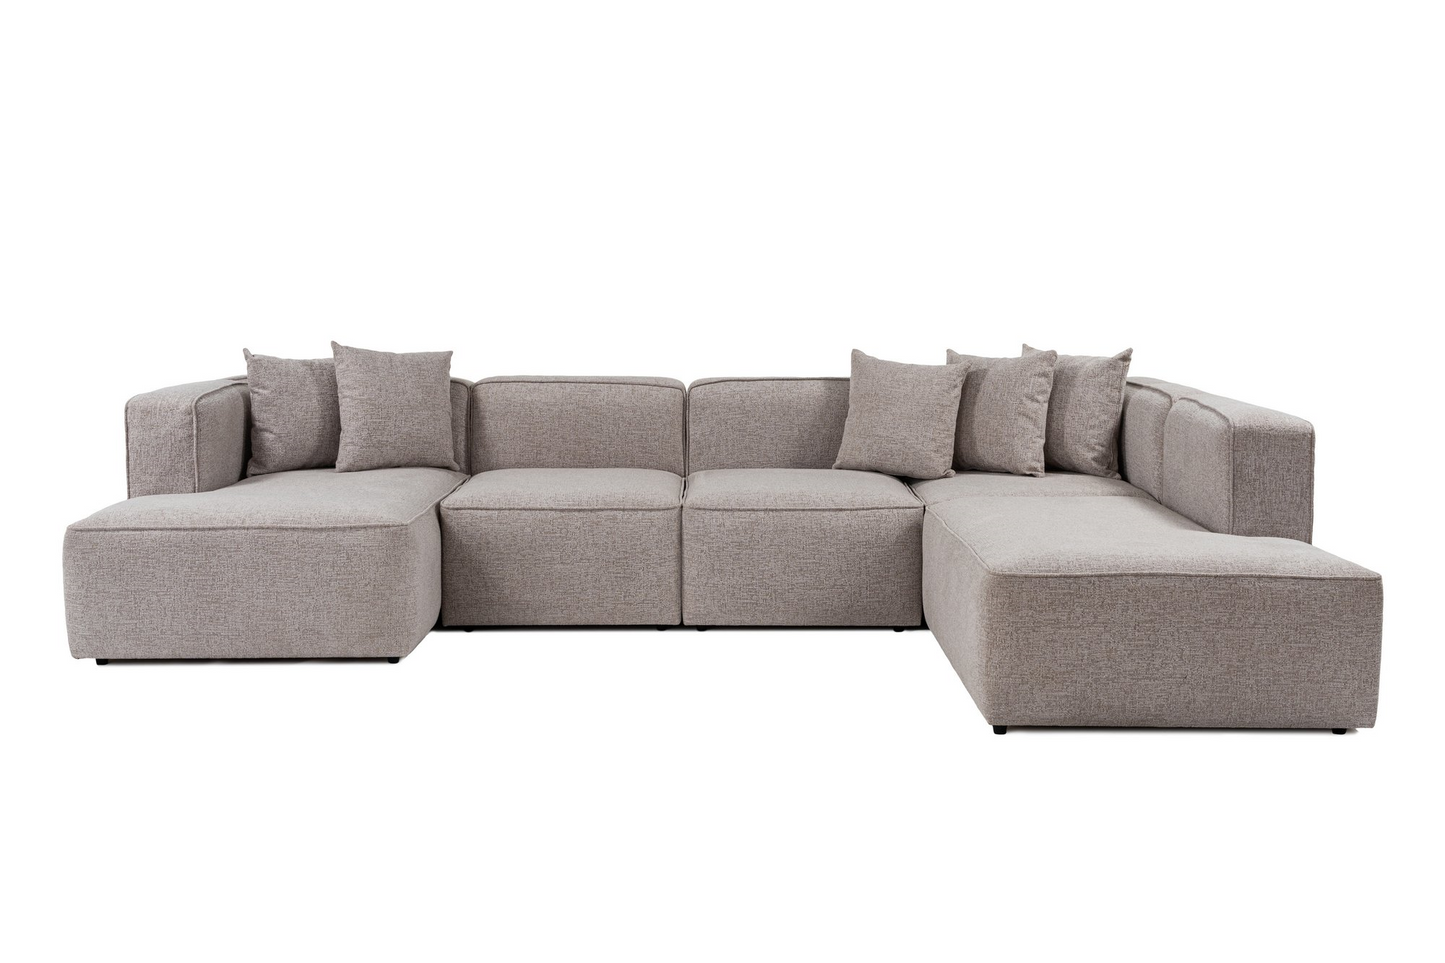 MATT Design | More sofa - 5 moduler, open end